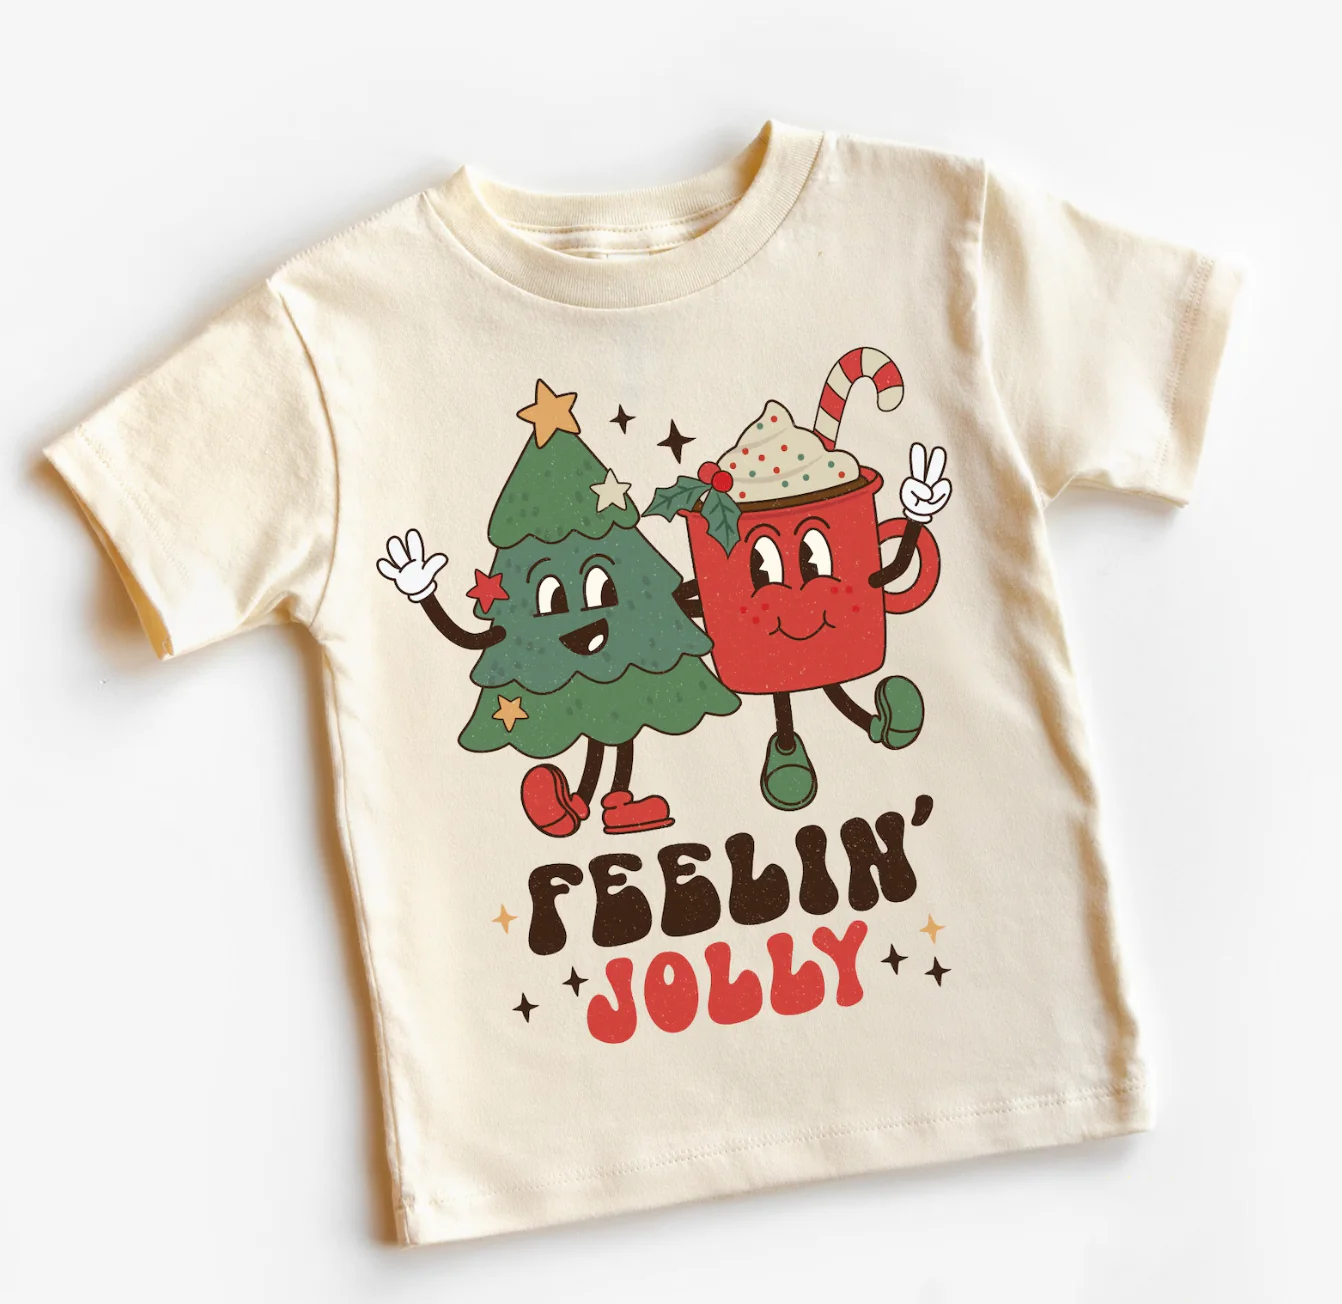 Feeling Jolly shirt with Christmas tree and mug graphics